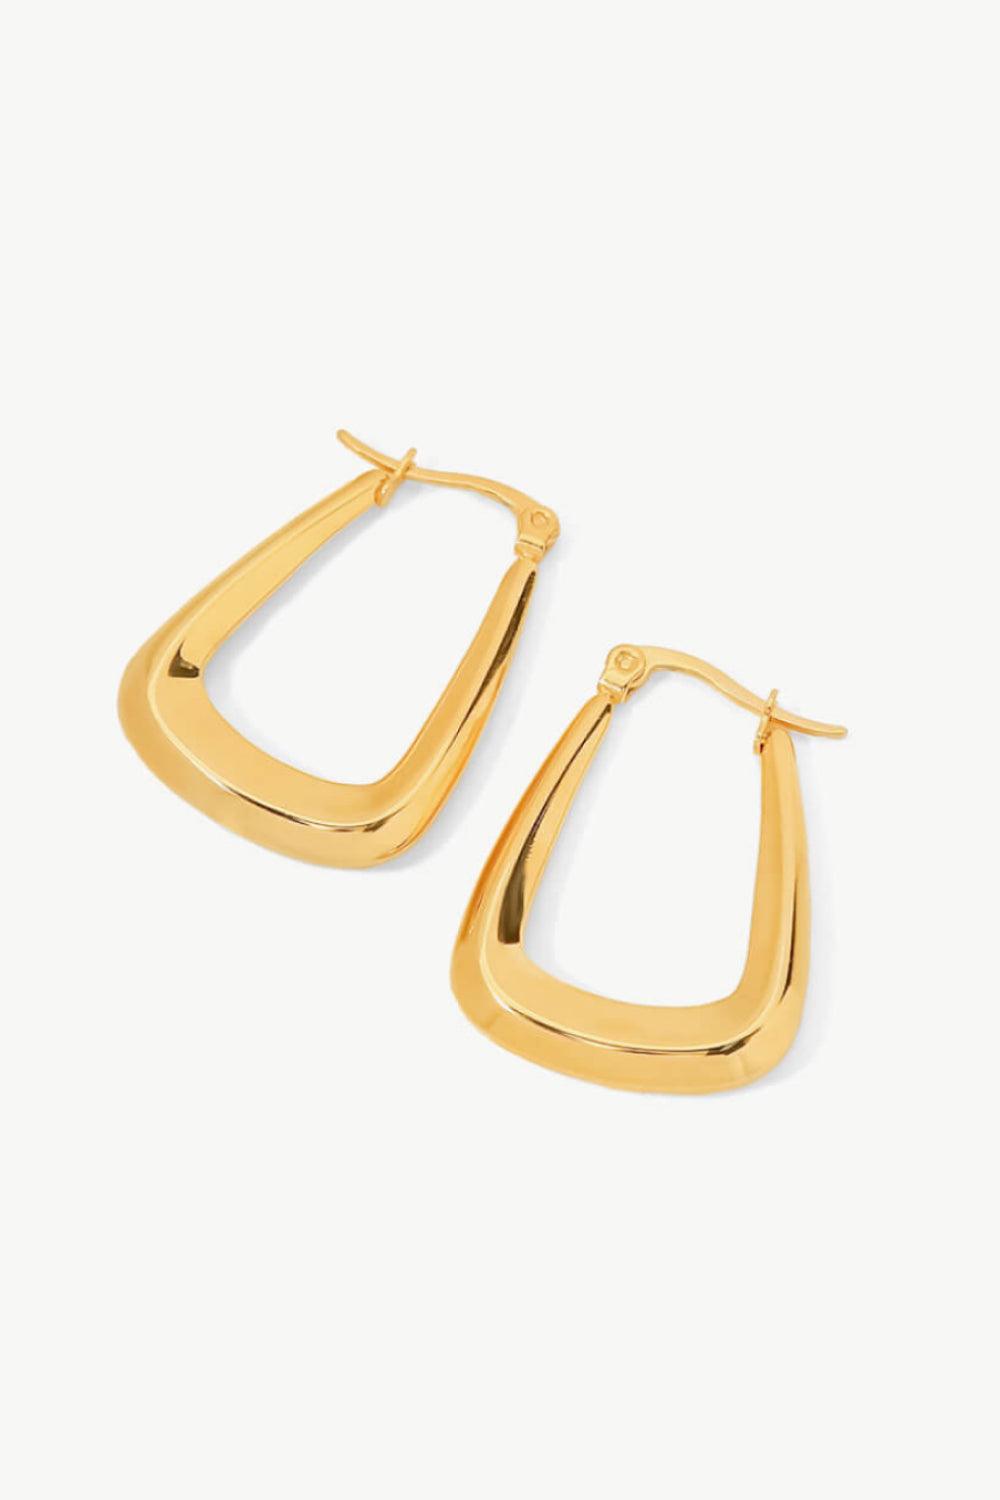 Geometric Hoop Earrings 18K Gold-Plated -Women’s fine jewelry elongated geometric earrings#Firefly Lane Boutique1